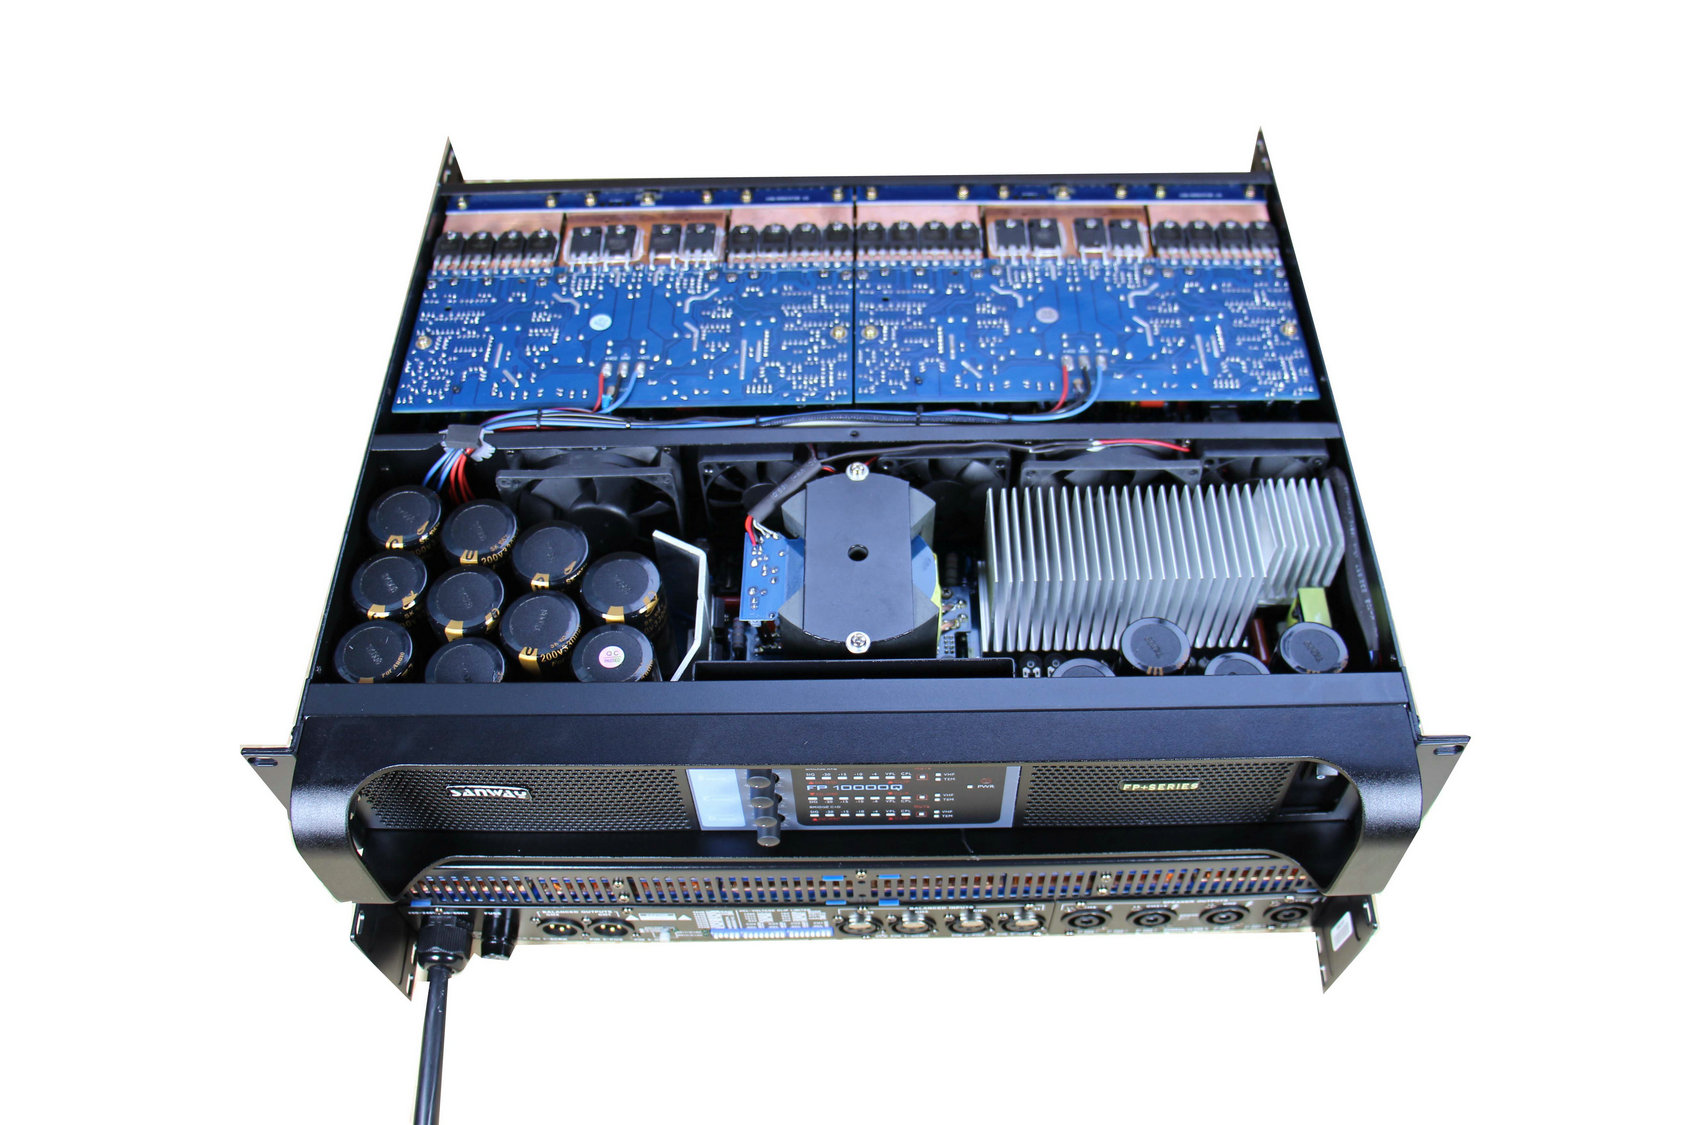 Amplificador de potencia de conmutación de canal FP10000QQ 4